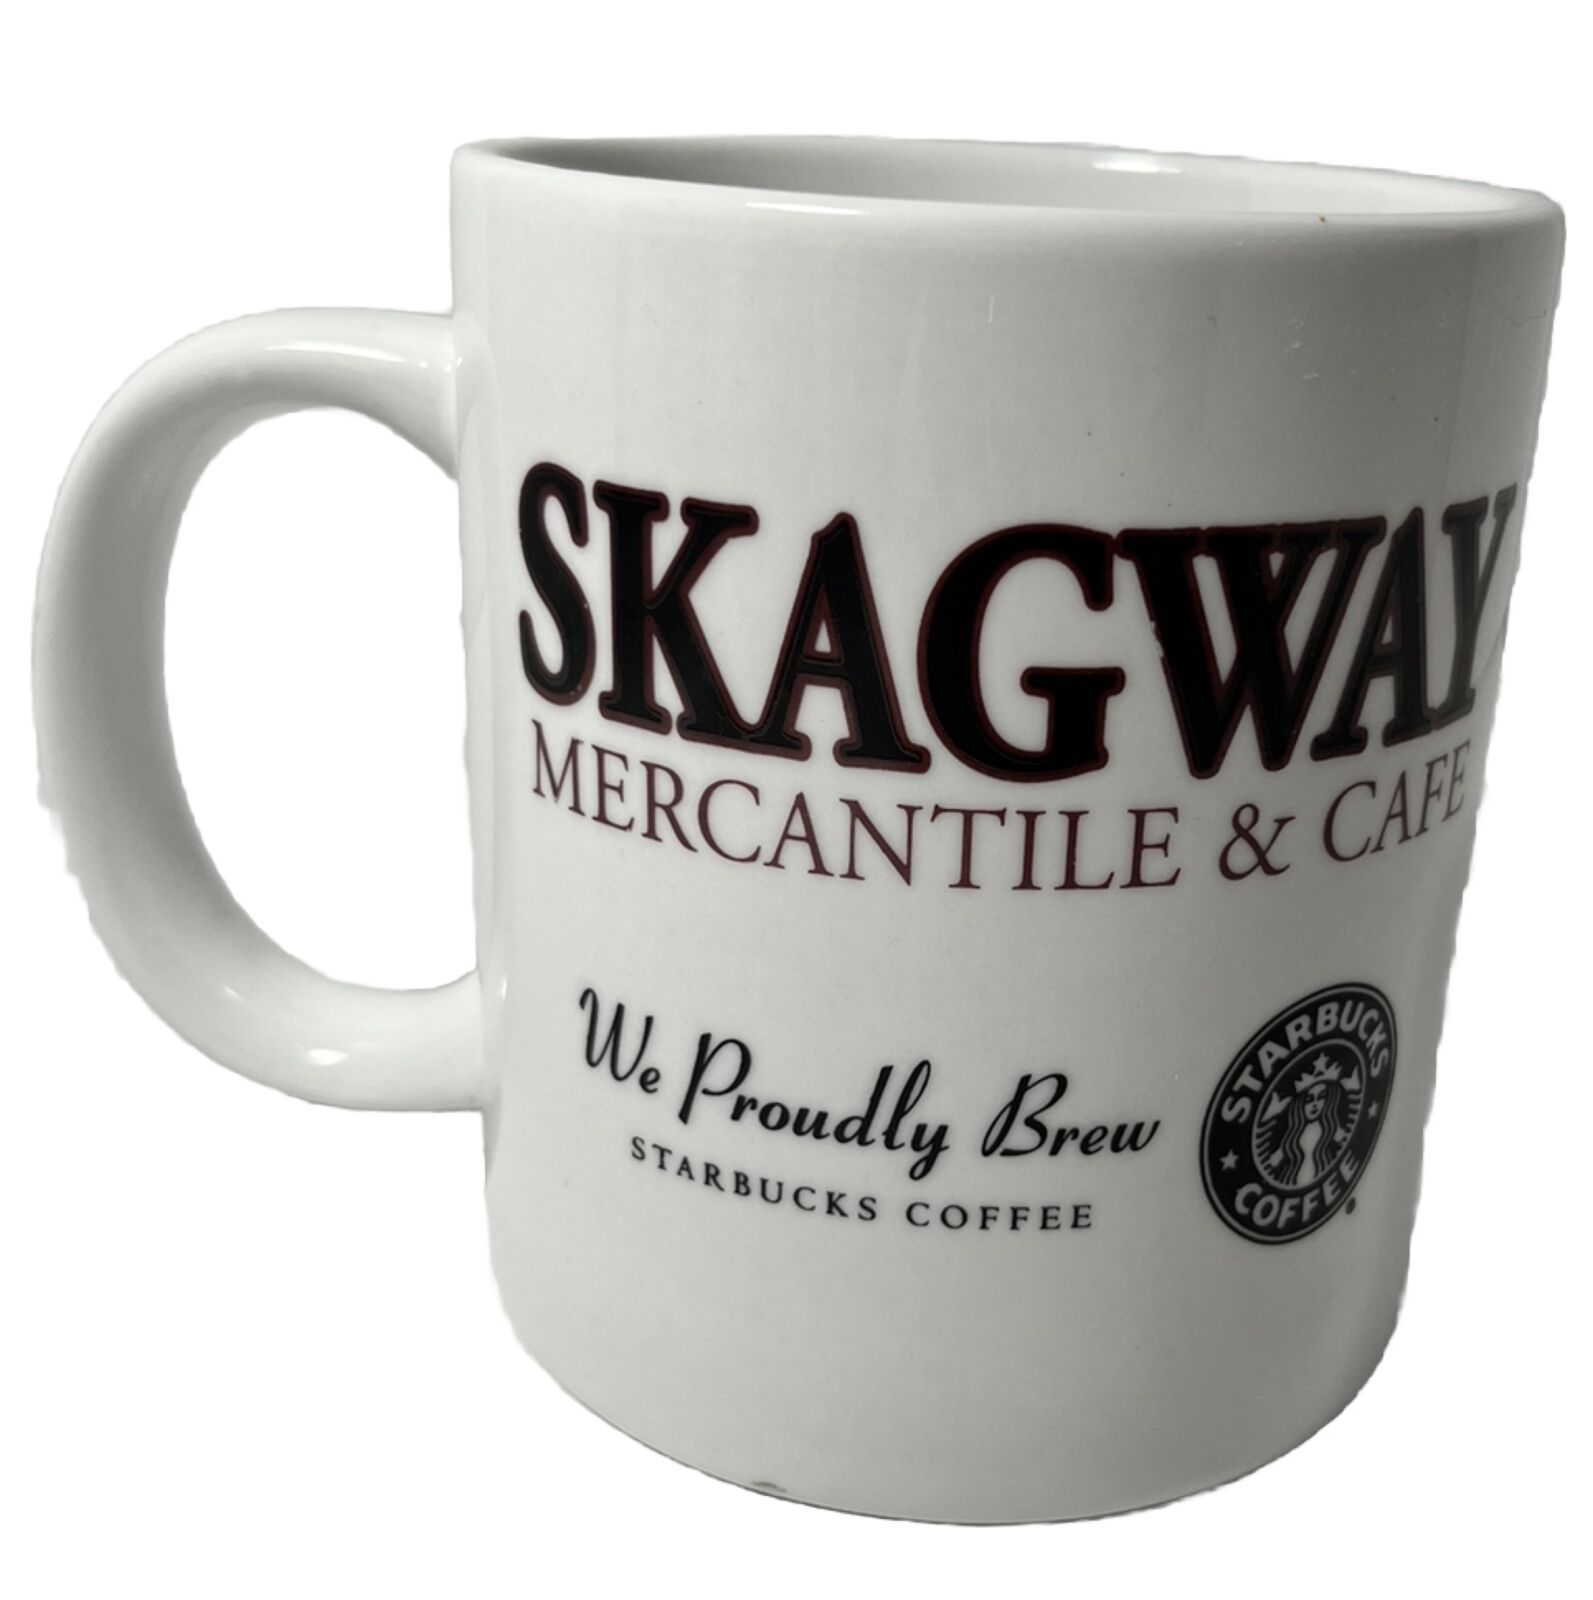 Starbucks Skagway Alaska Mercantile and Cafe Large 20 oz Coffee Mug Cup Vintage